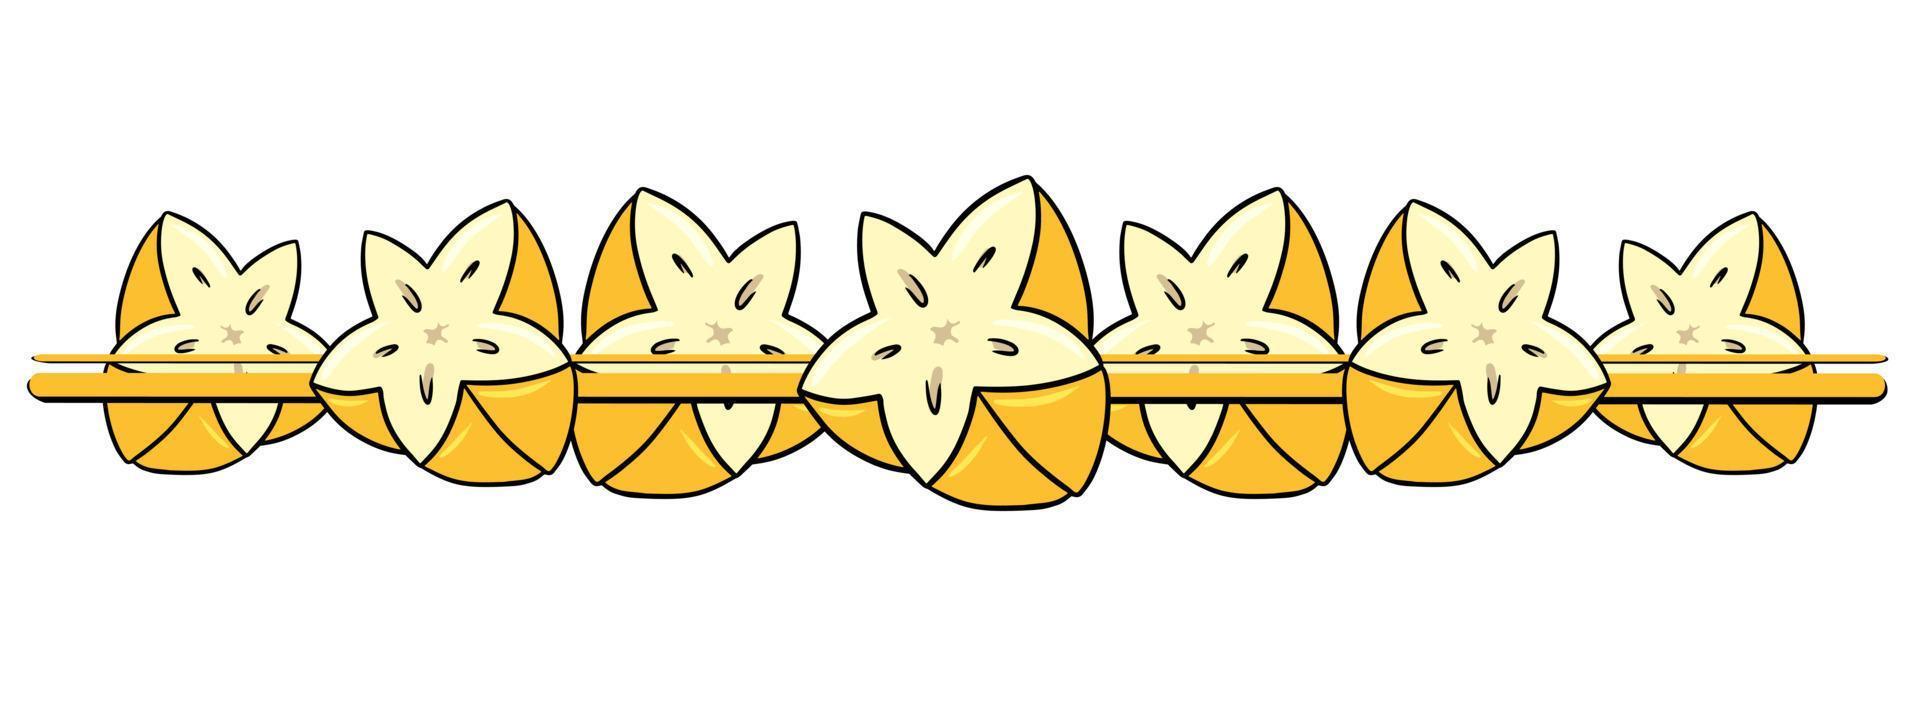 horizontaler Rand, Rand, leuchtend gelbe, saftige Hälften einer tropischen Fruchtkarambole, Vektorillustration im Cartoon-Stil auf weißem Hintergrund vektor